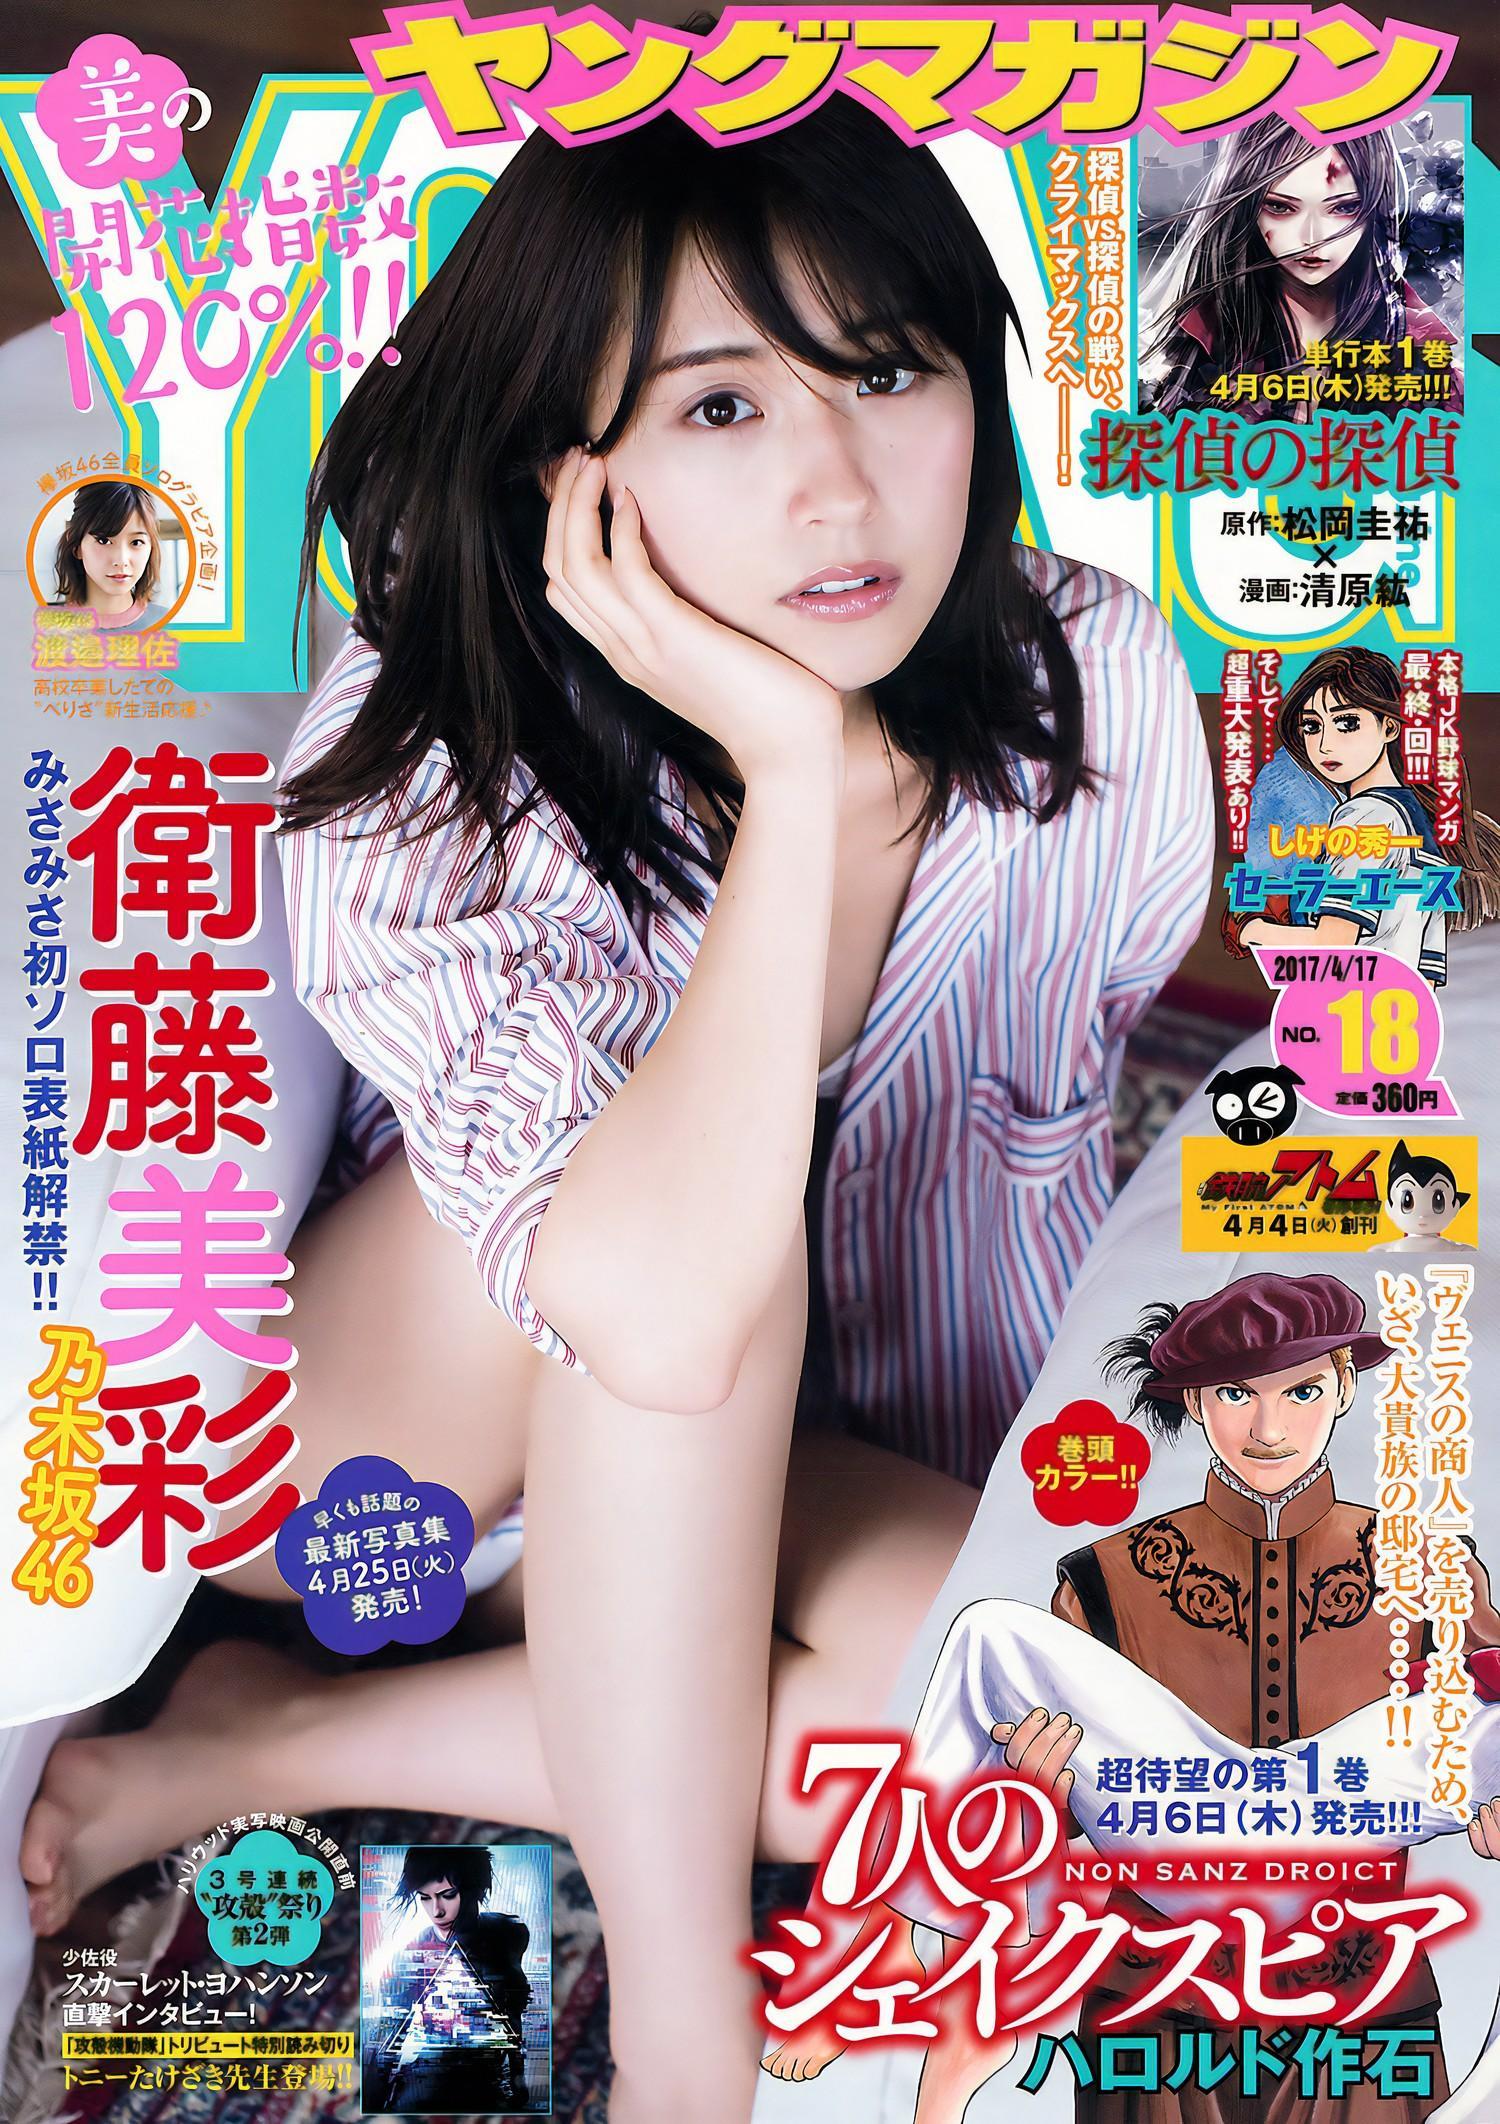 Misa Eto 衛藤美彩, Young Magazine 2017 No.18 (ヤングマガジン 2017年18号)(1)